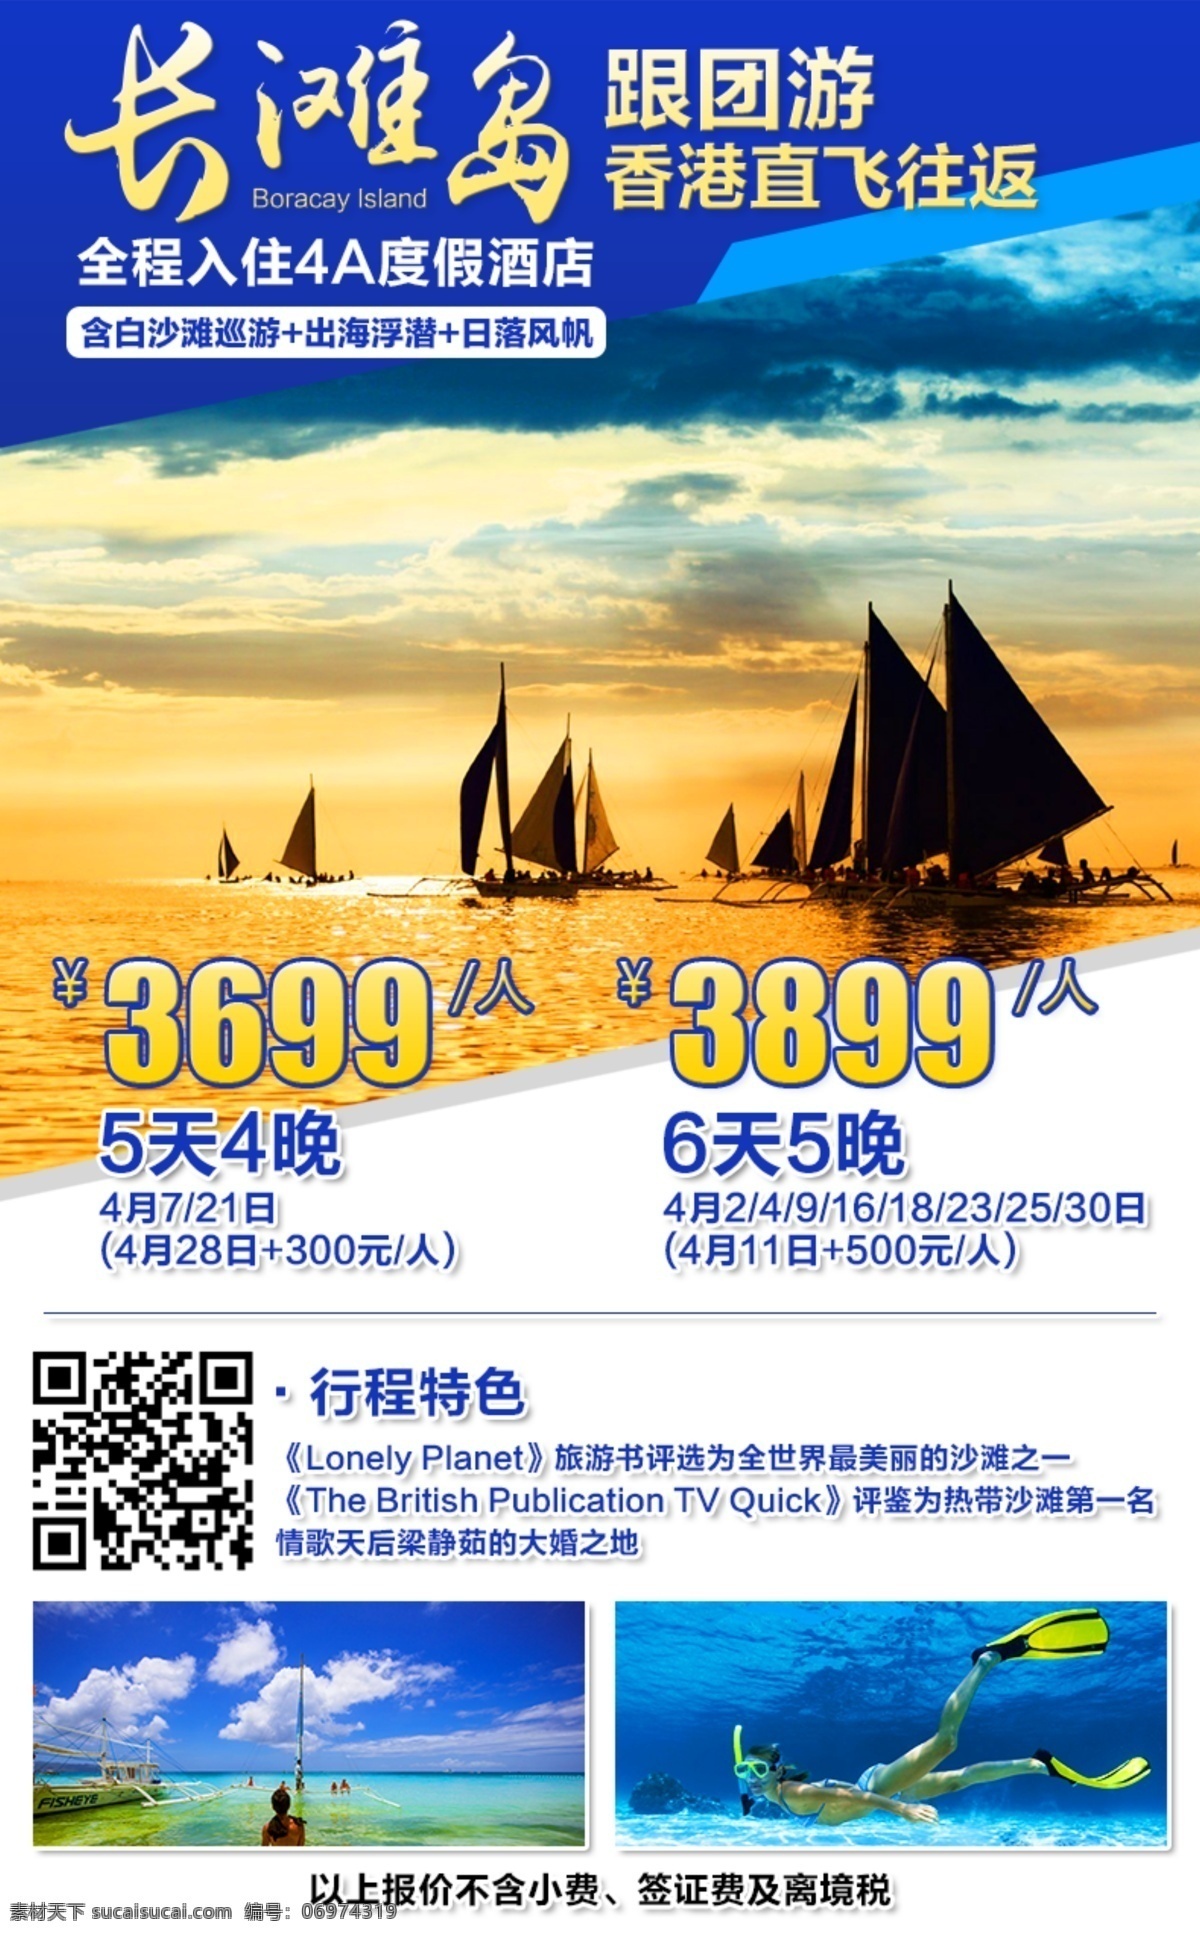 长滩岛宣传单 长滩岛 旅游 出境 潜水 香港往返